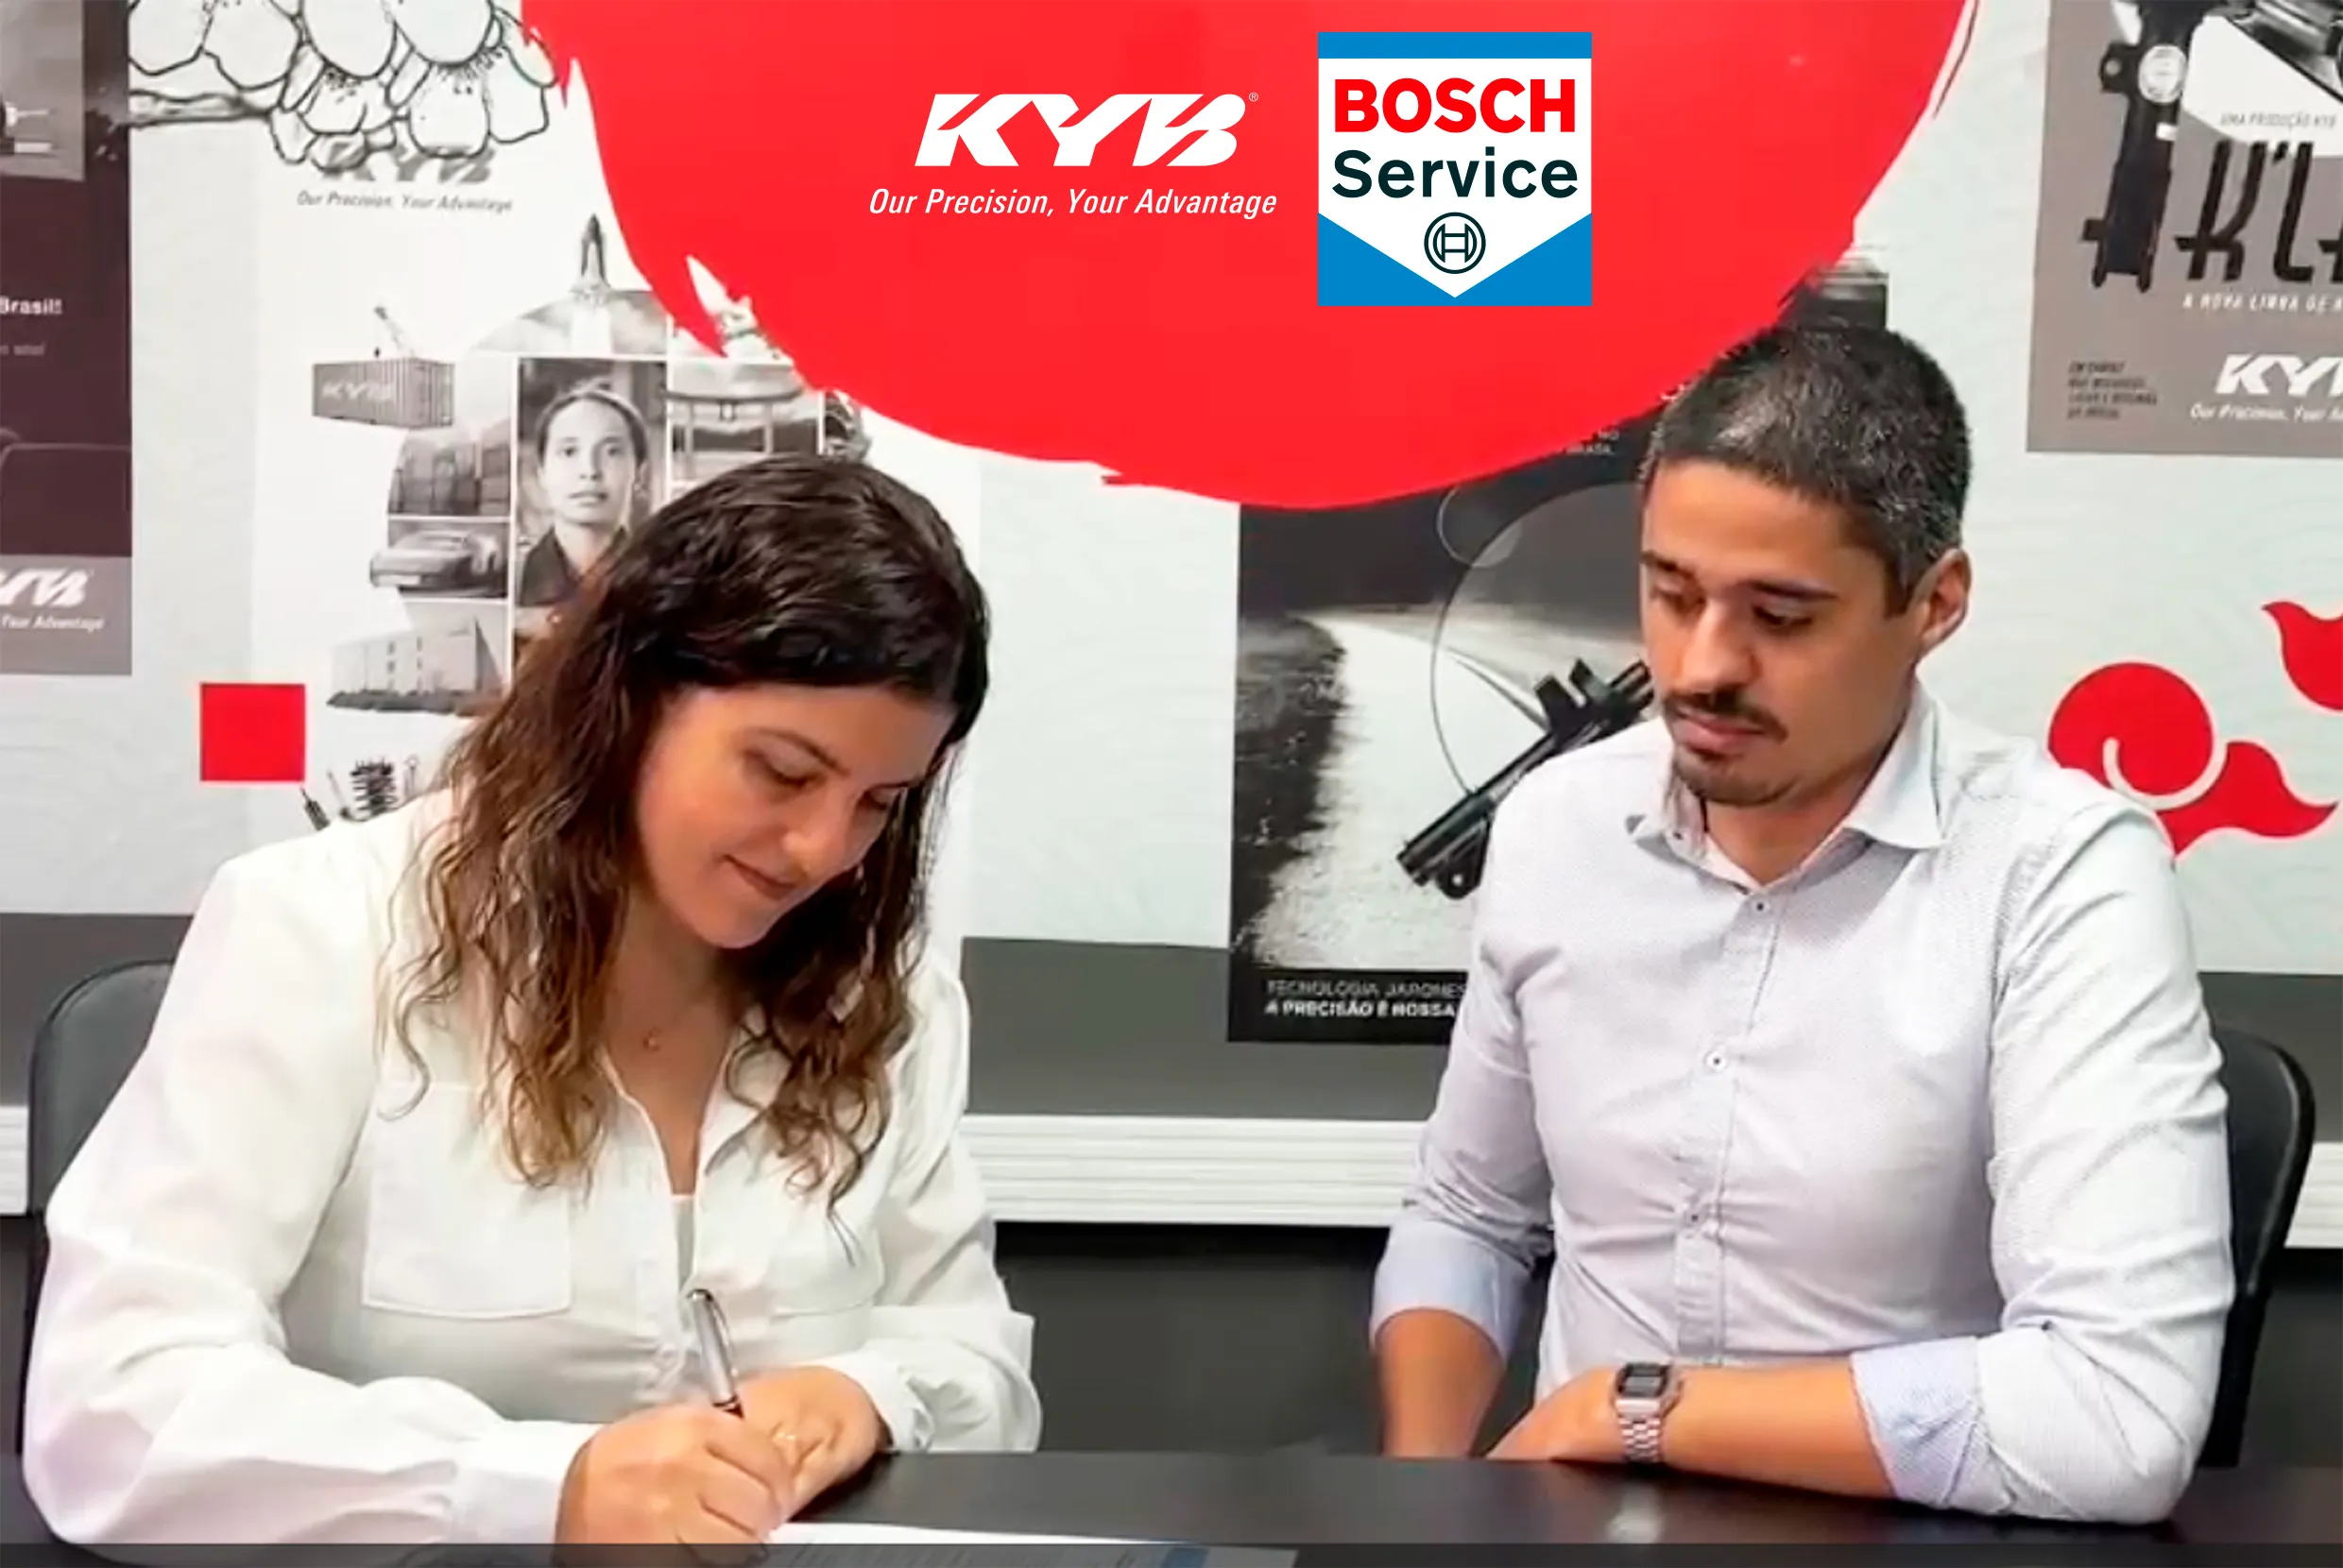 KYB do Brasil e Bosch Car Service anunciam nova parceria estratégica no Mercado Automotivo